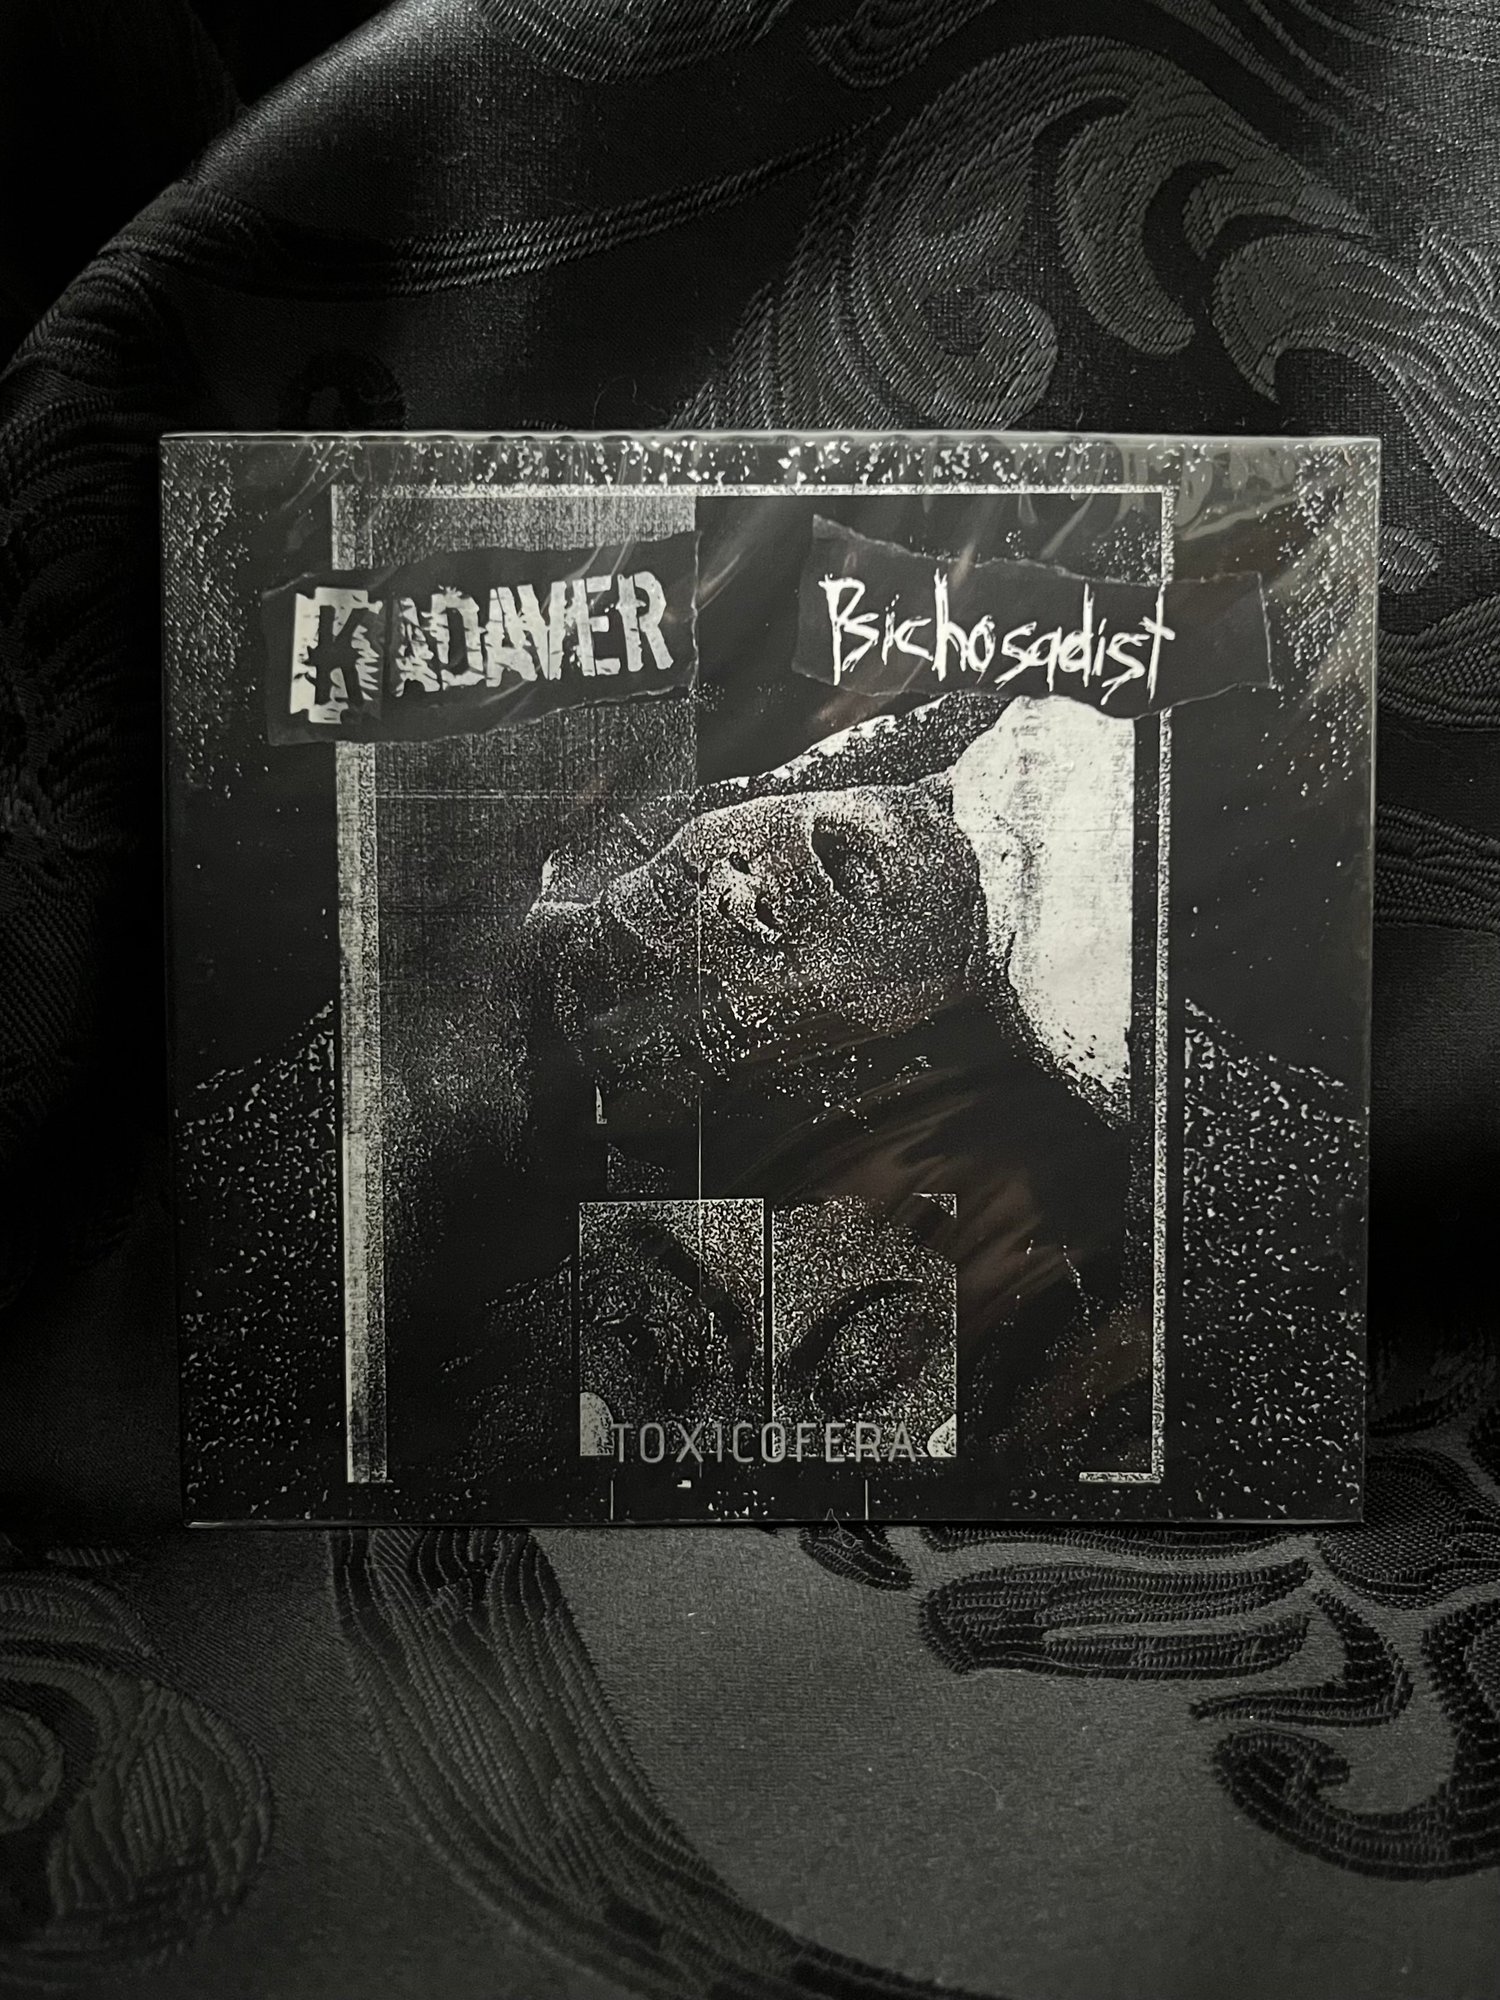 Kadaver/Psychosadist - Toxicofera CD (999 Cuts/Phage)